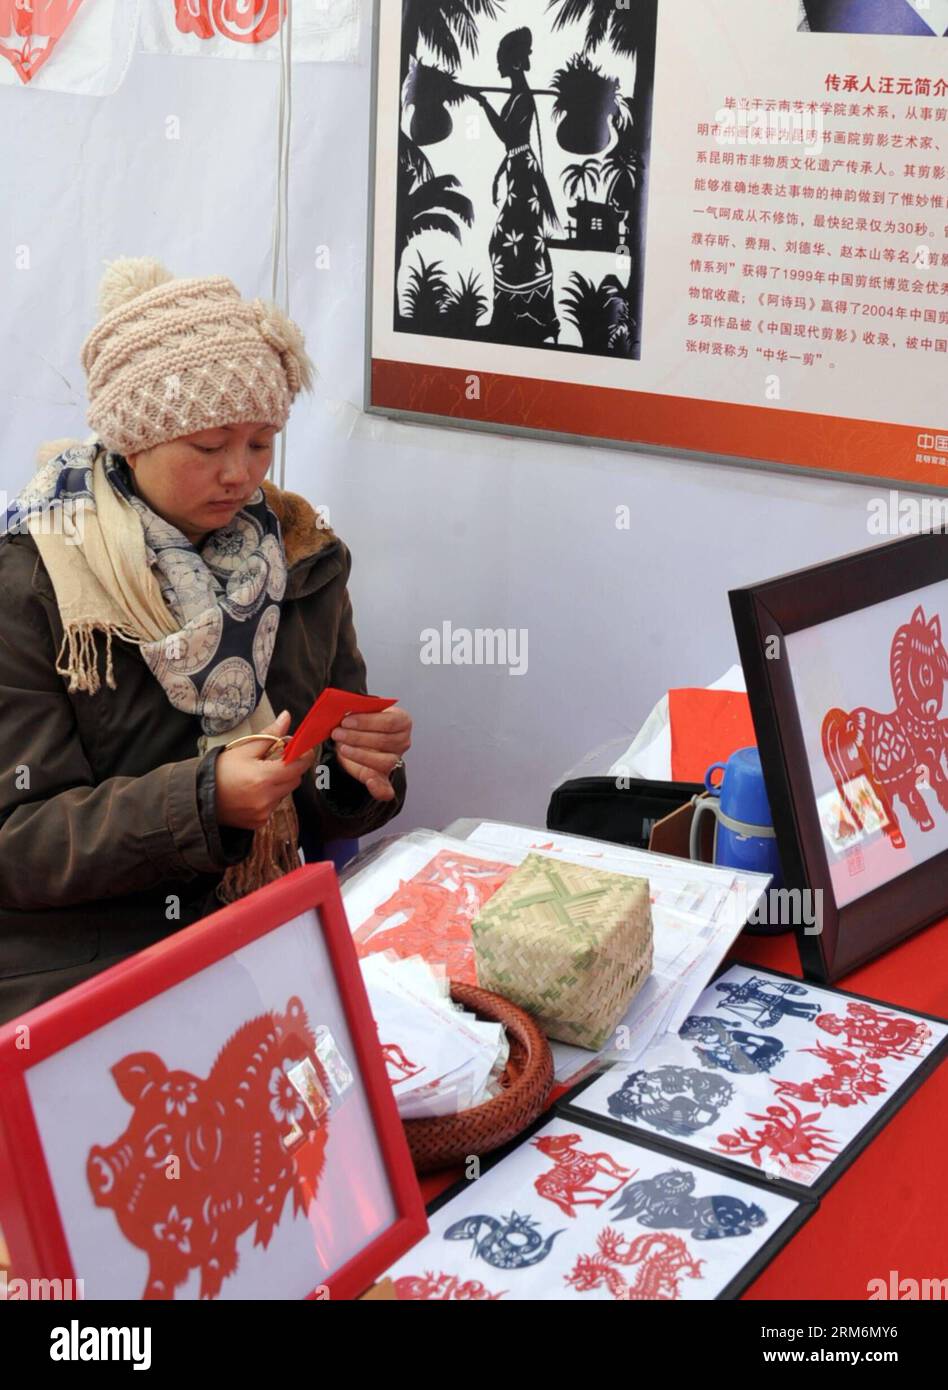 (140121) -- KUNMING, 21 janv. 2014 (Xinhua) -- le maître de la coupe de papier Duan Liyun montre la coupe de papier à Kunming, capitale de la province du Yunnan du sud-ouest de la Chine, le 21 janvier 2014. Une exposition sur le patrimoine culturel immatériel a eu lieu mardi dans l'ancienne ville de Guandu.(Xinhua/Chen Haining) (zkr) CHINA-KUNMING-NON-MATERIAL CULTURAL HERITAGE(CN) PUBLICATIONxNOTxINxCHN Kunming Jan 21 2014 découpe de papier XINHUA Maître Duan Liyun montre découpe de papier dans la capitale Kunming du sud-ouest de la Chine S Yunnan province Jan 21 2014 une exposition sur le patrimoine culturel non matériel quel héros dans la ville antique de Guandu Banque D'Images